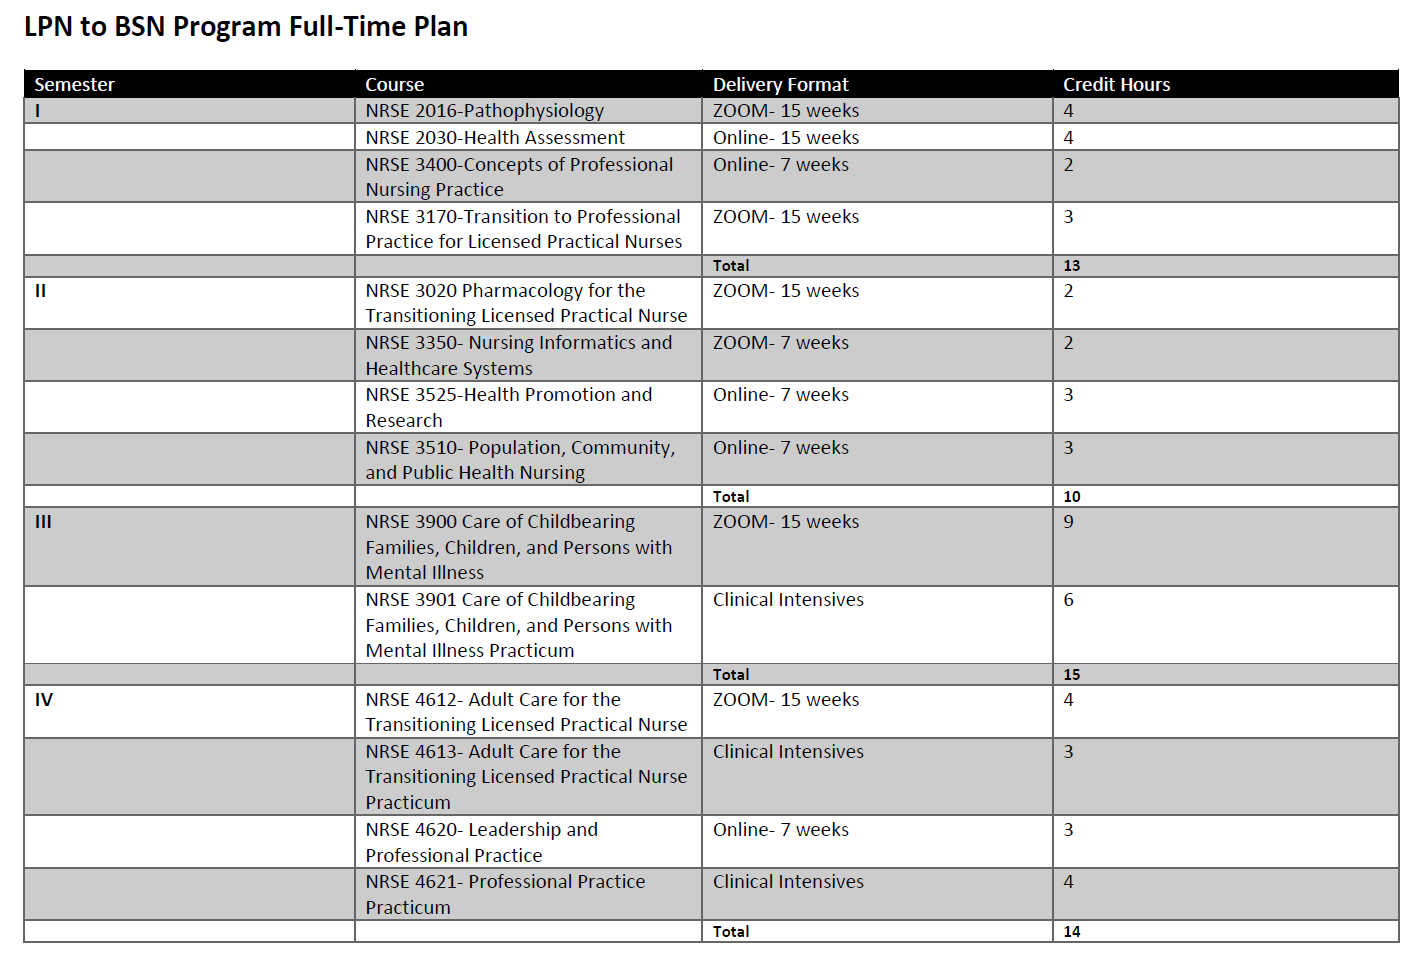 LPN to BSN Program Full-Time Plan